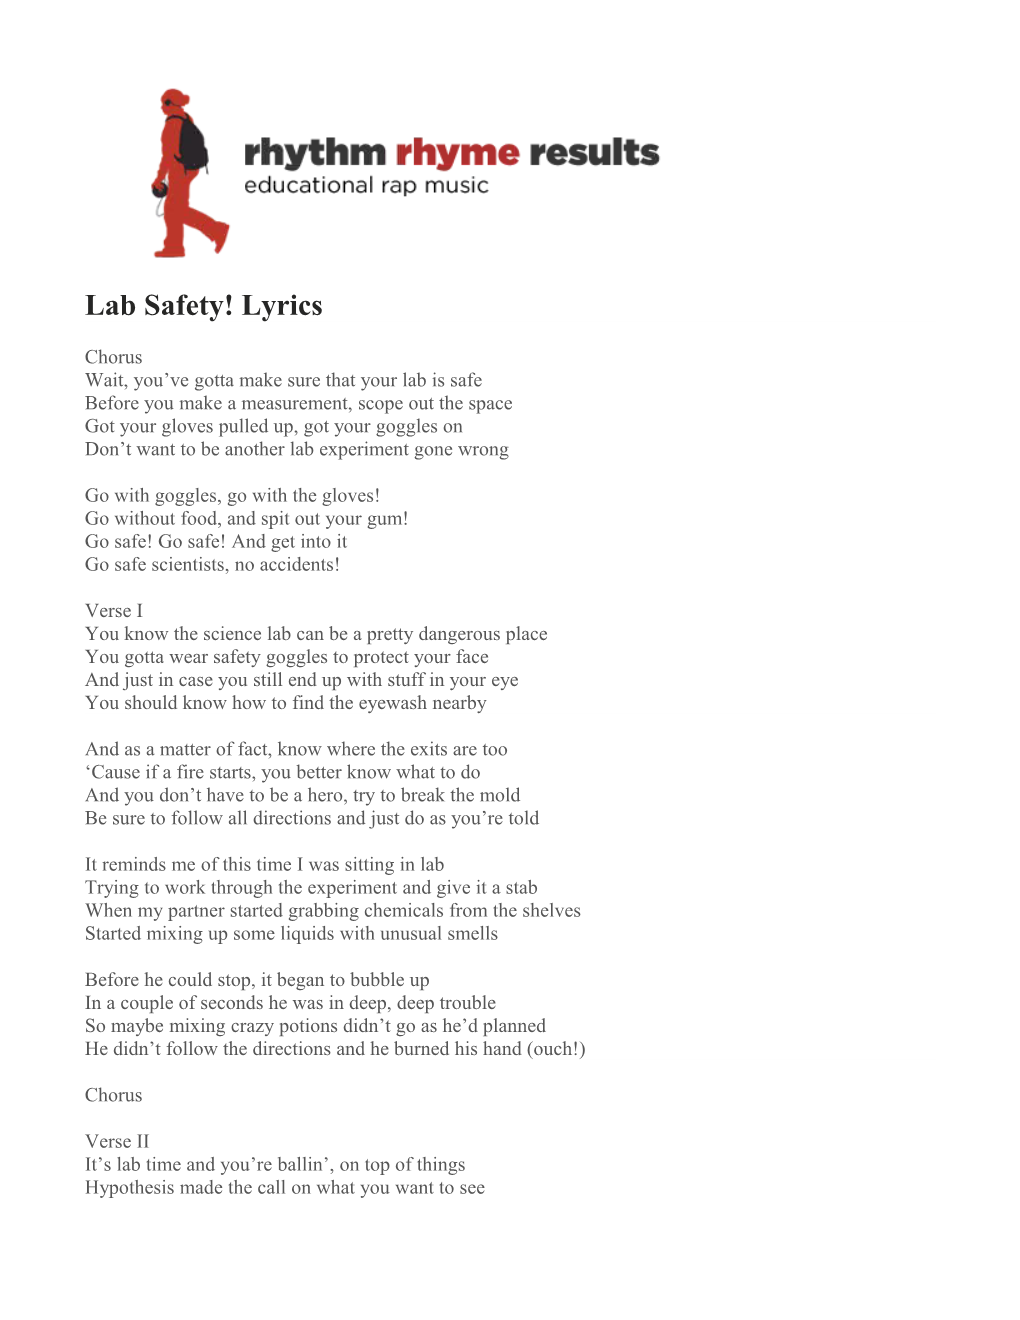 Lab Safety! Lyrics